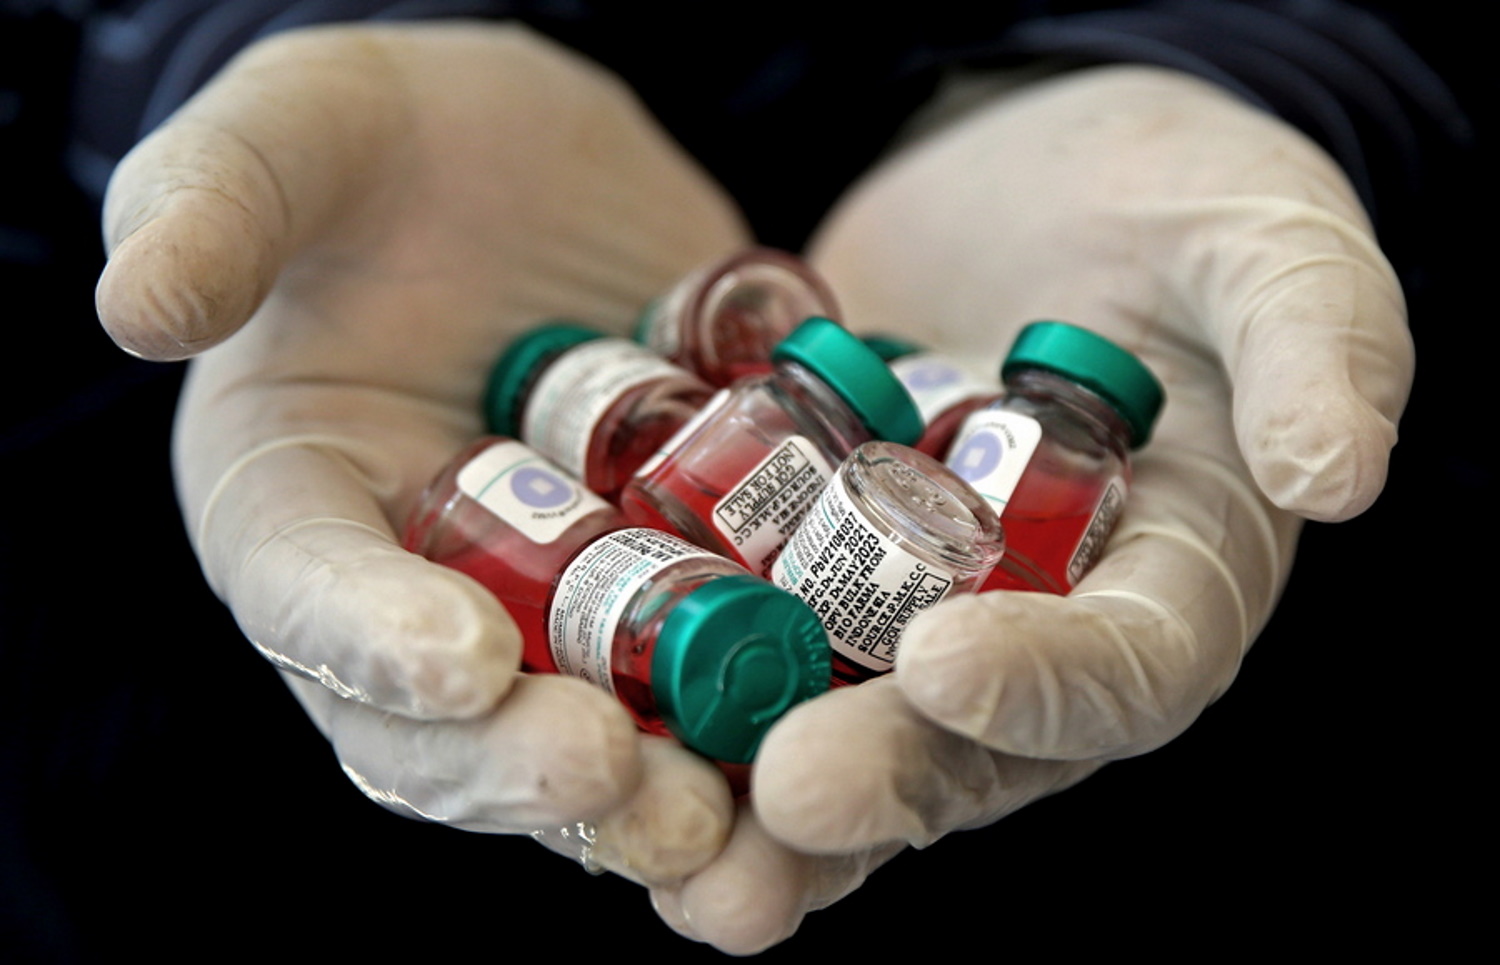 Πολιομυελίτιδα: Αντιμέτωπη με τον ιό και η Νέα Υόρκη μετά τη Βρετανία – Έντονη ανησυχία για τον «σιωπηλό» δολοφόνο